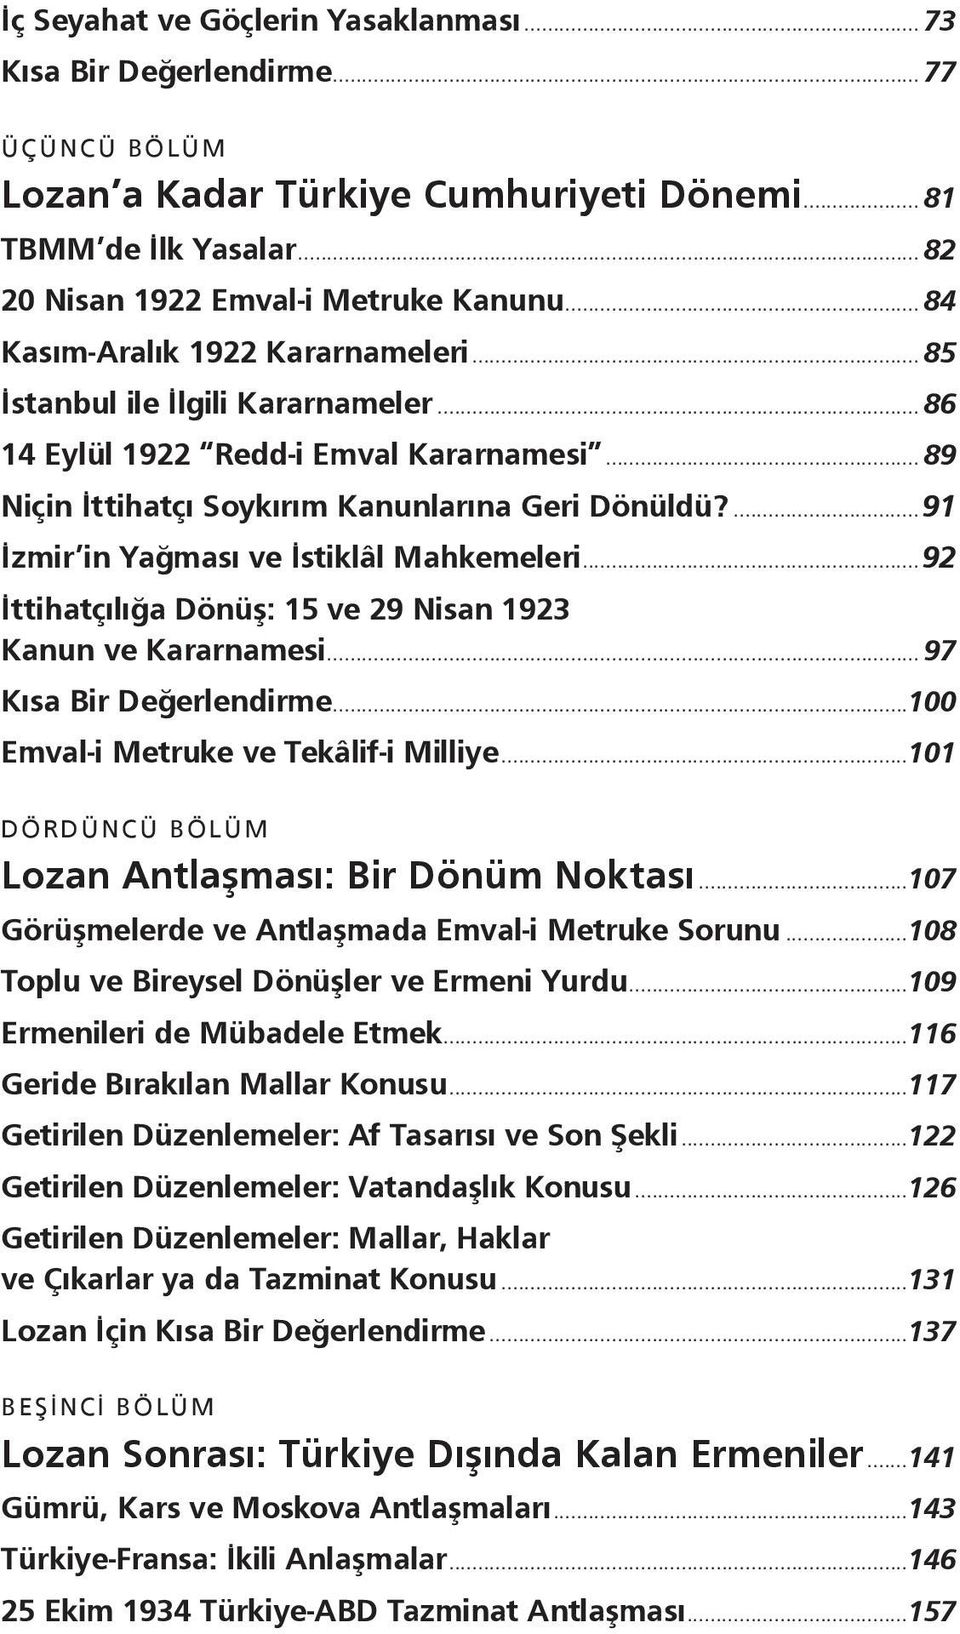 ...91 İzmir in Yağması ve İstiklâl Mahkemeleri...92 İttihatçılığa Dönüş: 15 ve 29 Nisan 1923 Kanun ve Kararnamesi... 97 Kısa Bir Değerlendirme...100 Emval-i Metruke ve Tekâlif-i Milliye.